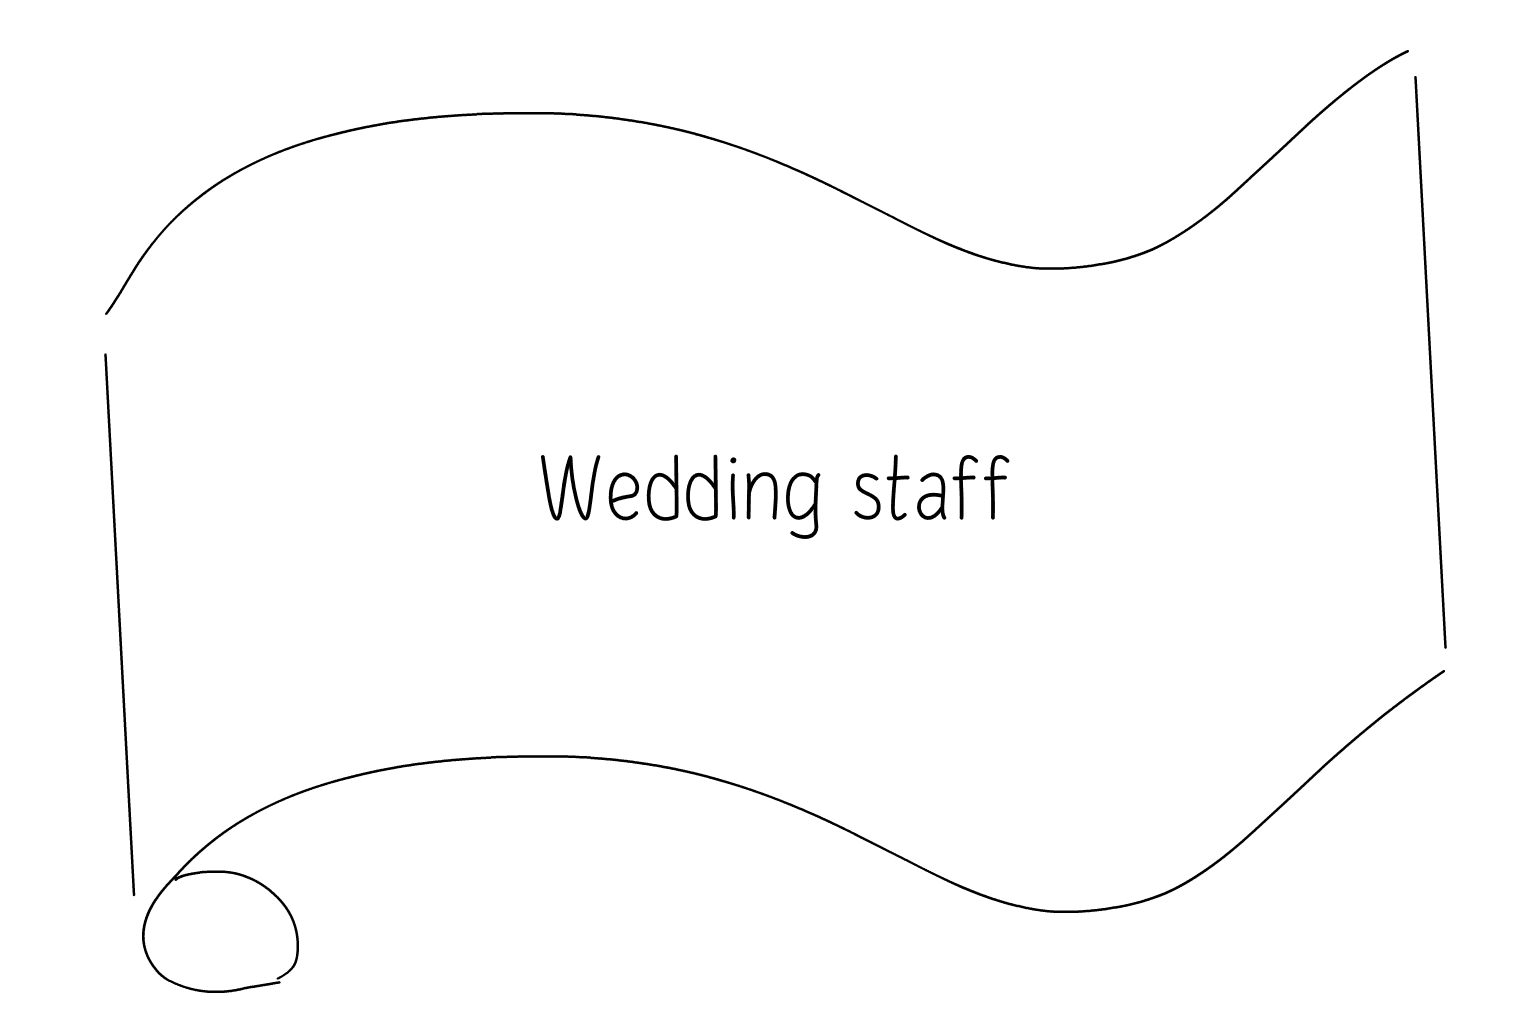 Ilustración del personal del servicio de bodas